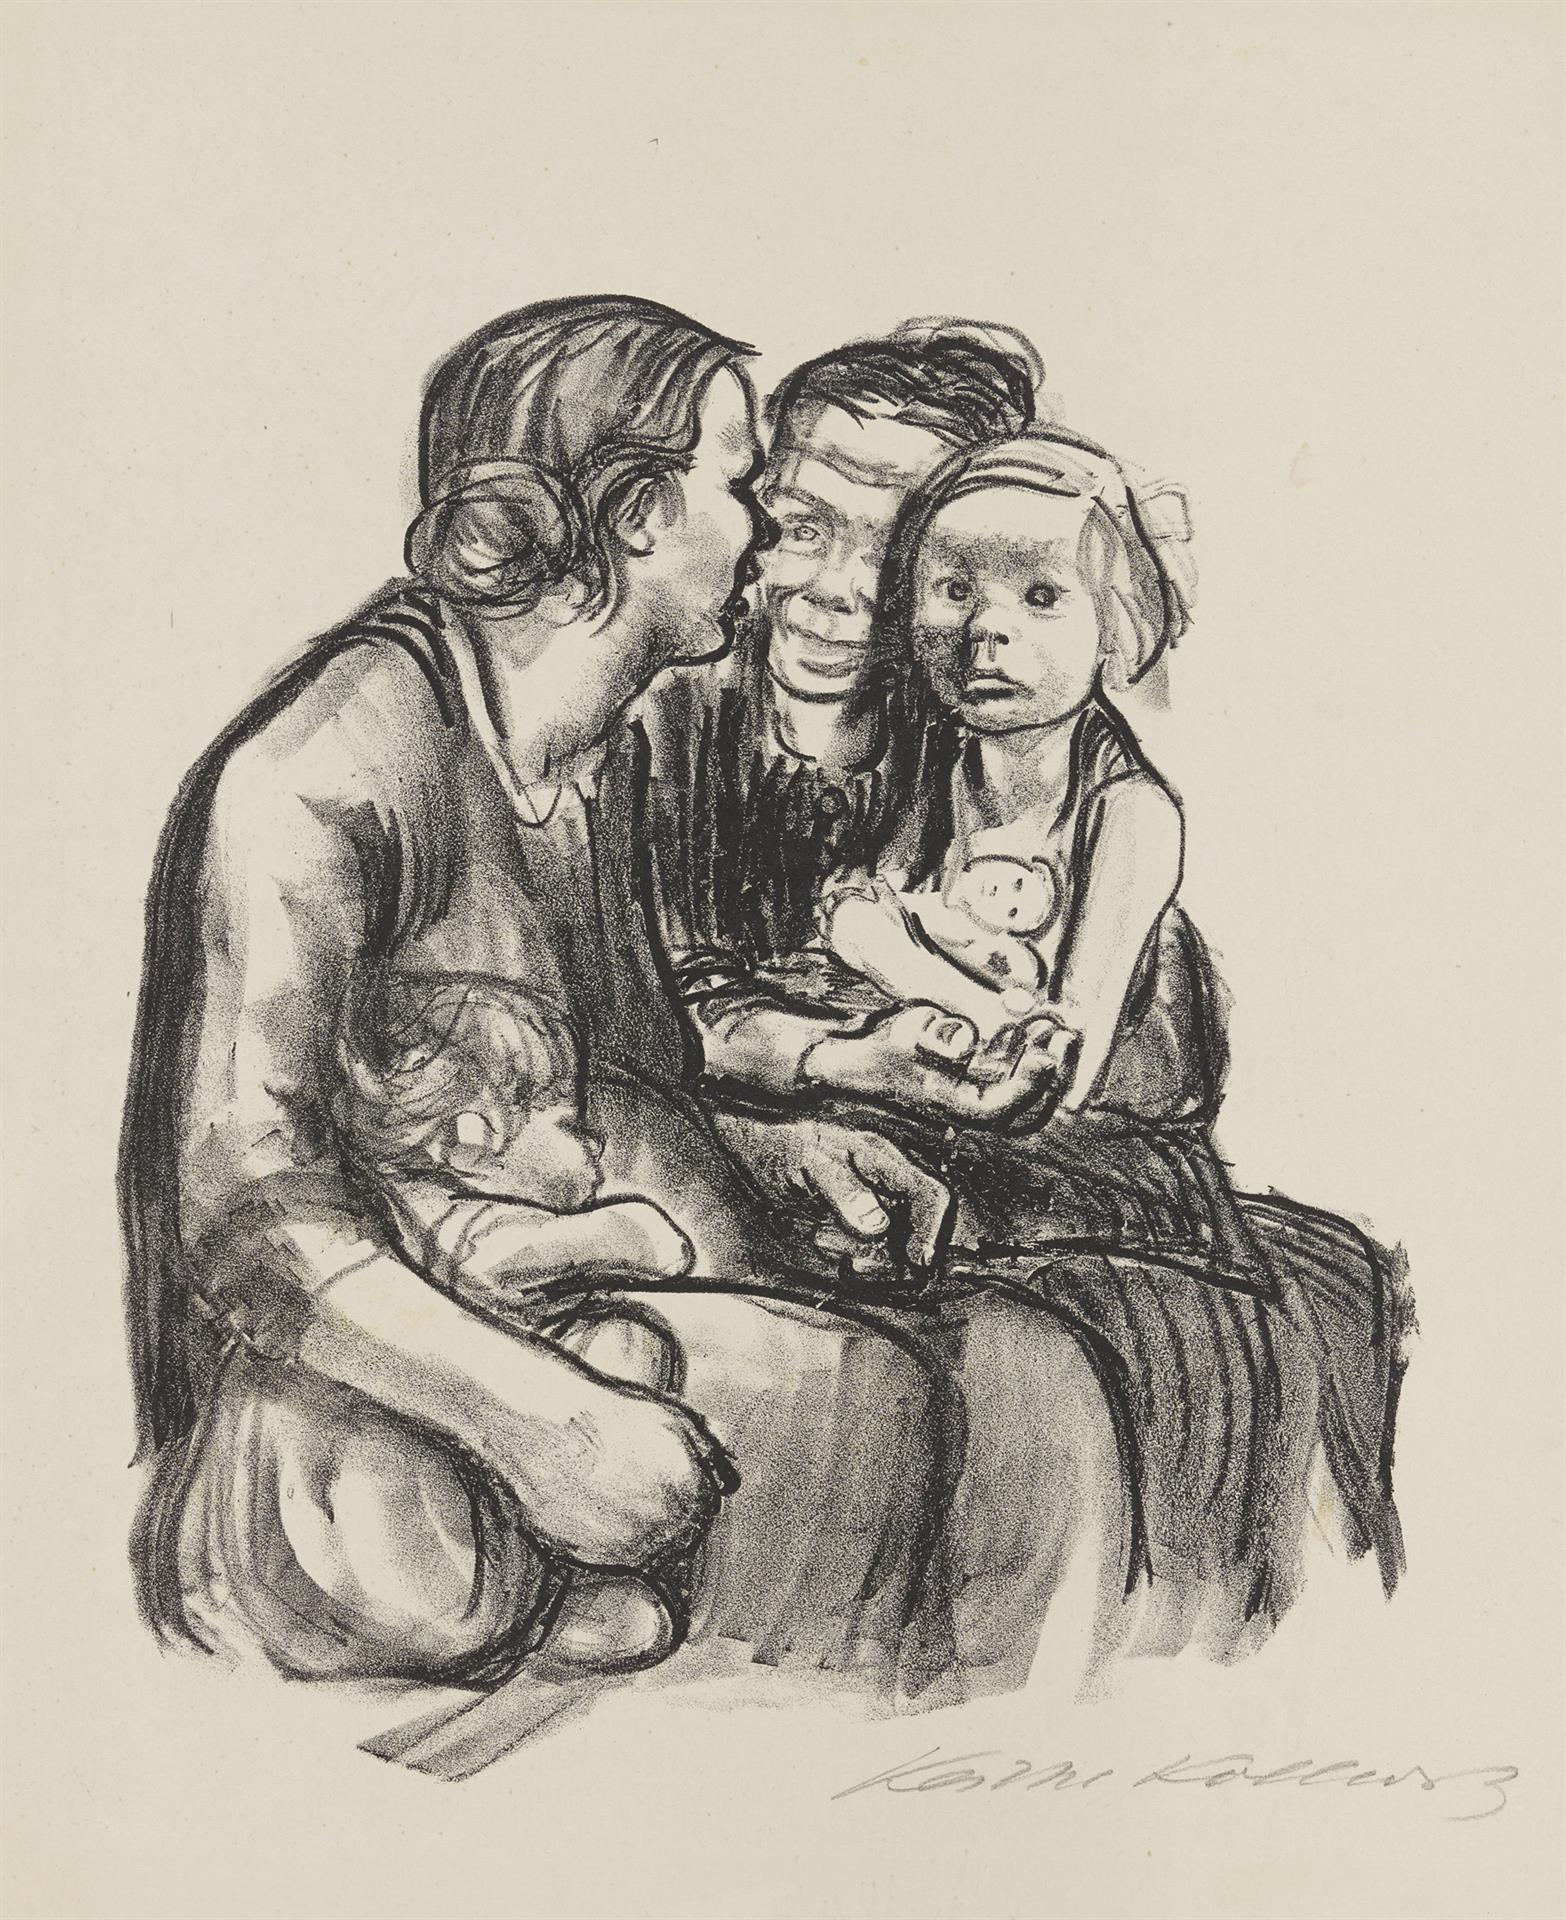 Käthe Kollwitz, Two chatting Women with two Children, final version, 1930, crayon lithograph (transfer), Kn 250 c, Cologne Kollwitz Collection © Käthe Kollwitz Museum Köln